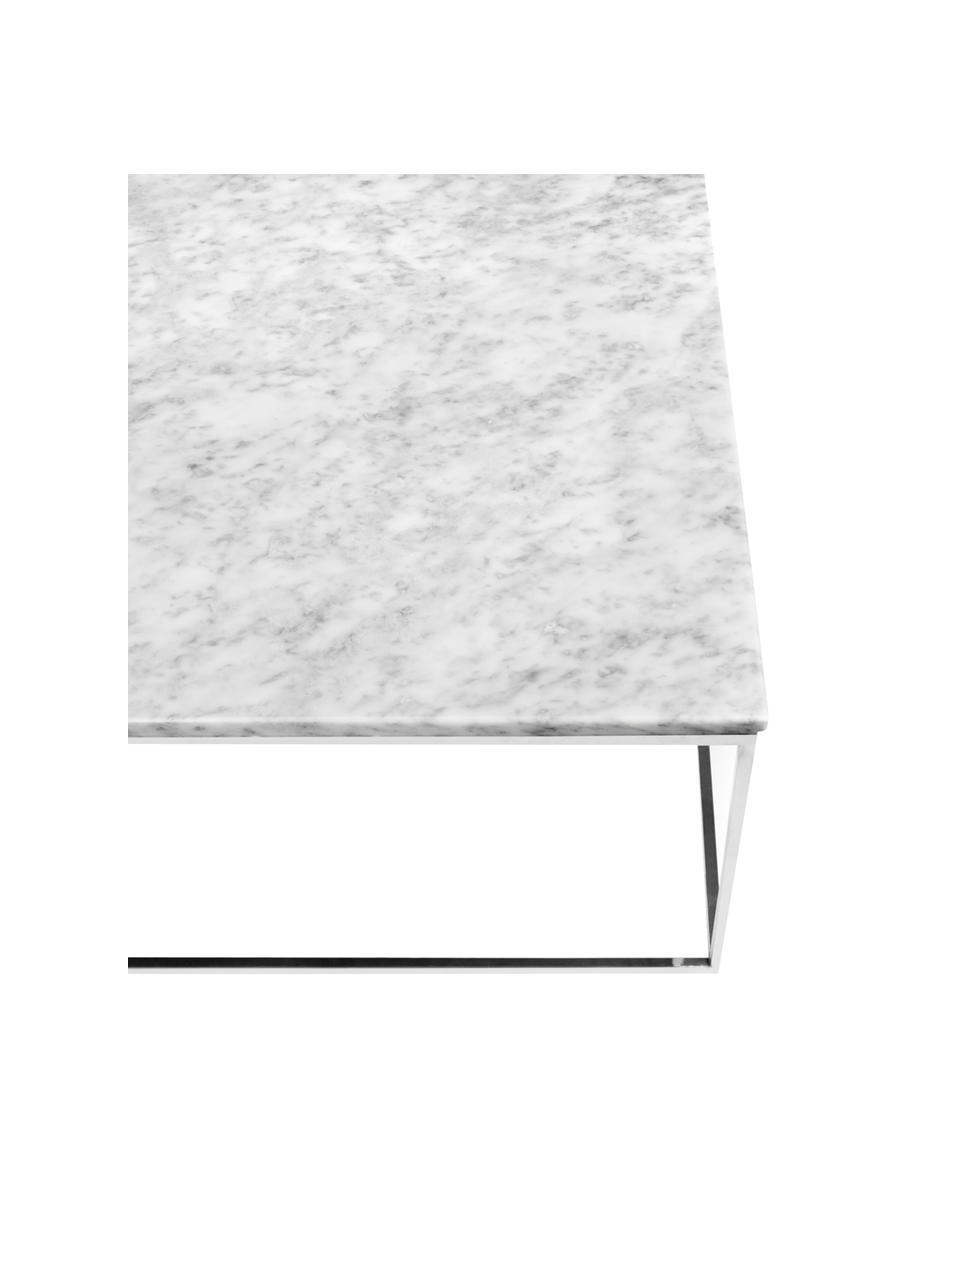 Mramorový konferenční stolek Gleam, Deska stolu: bílá, mramorovaná Rám: chrom